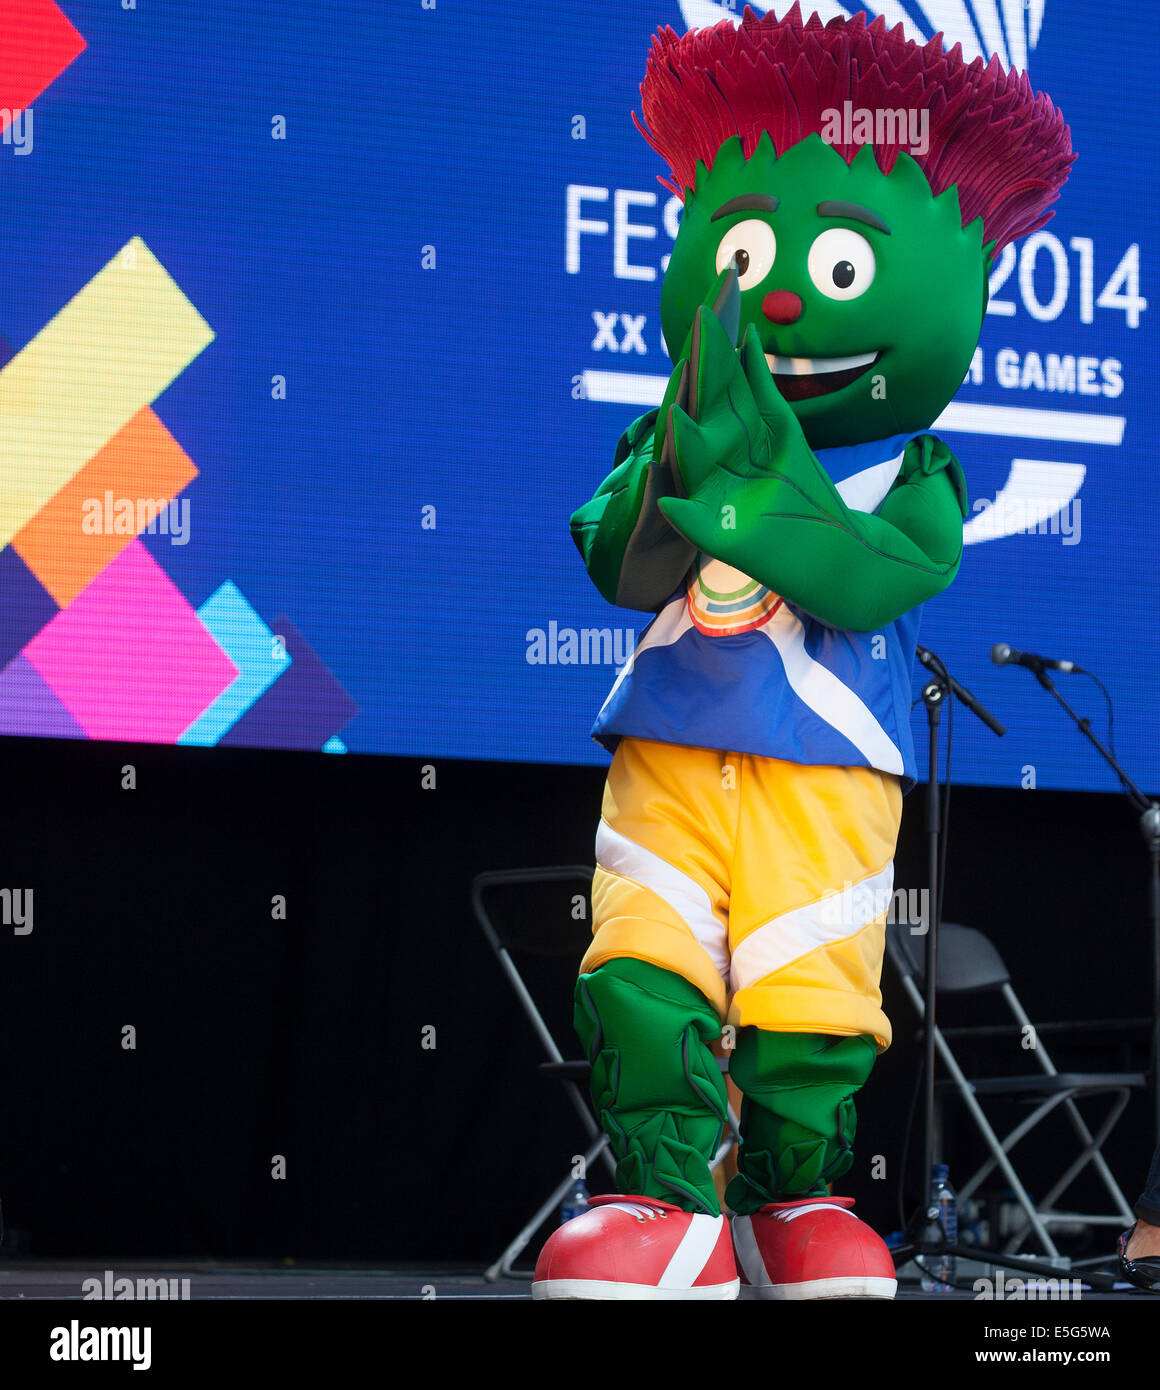 Glasgow, Ecosse, Royaume-Uni. 30 juillet, 2014. Clyde, la mascotte des Jeux du Commonwealth de Glasgow, apparaissant dans Glasgow Green dans le cadre du Festival 2014, un festival culturel organisé en parallèle avec les Jeux, à Glasgow, en Écosse. Banque D'Images